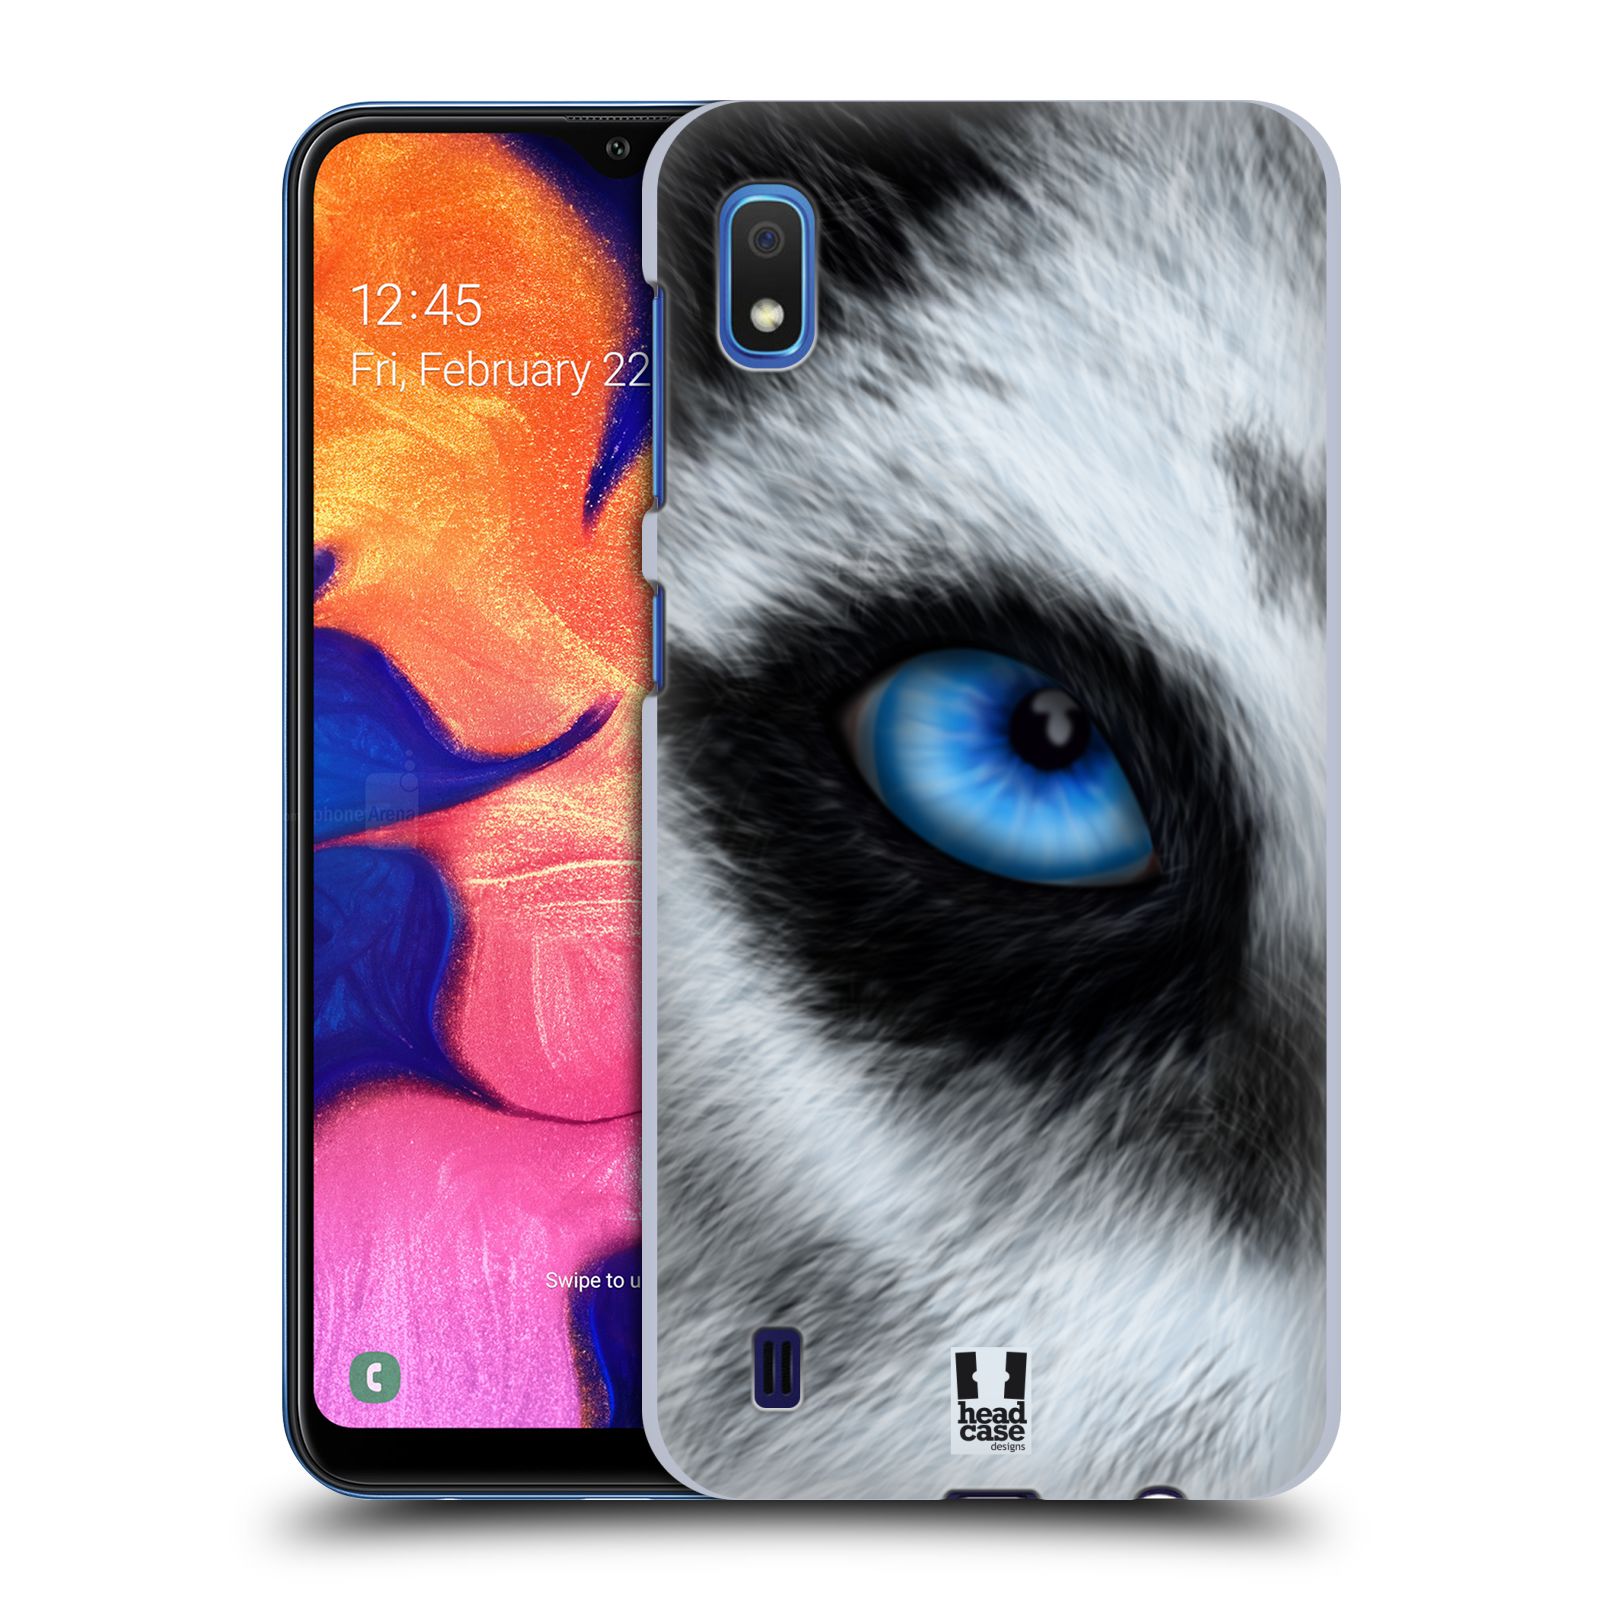 Pouzdro na mobil Samsung Galaxy A10 - HEAD CASE - vzor pohled zvířete oko pes husky